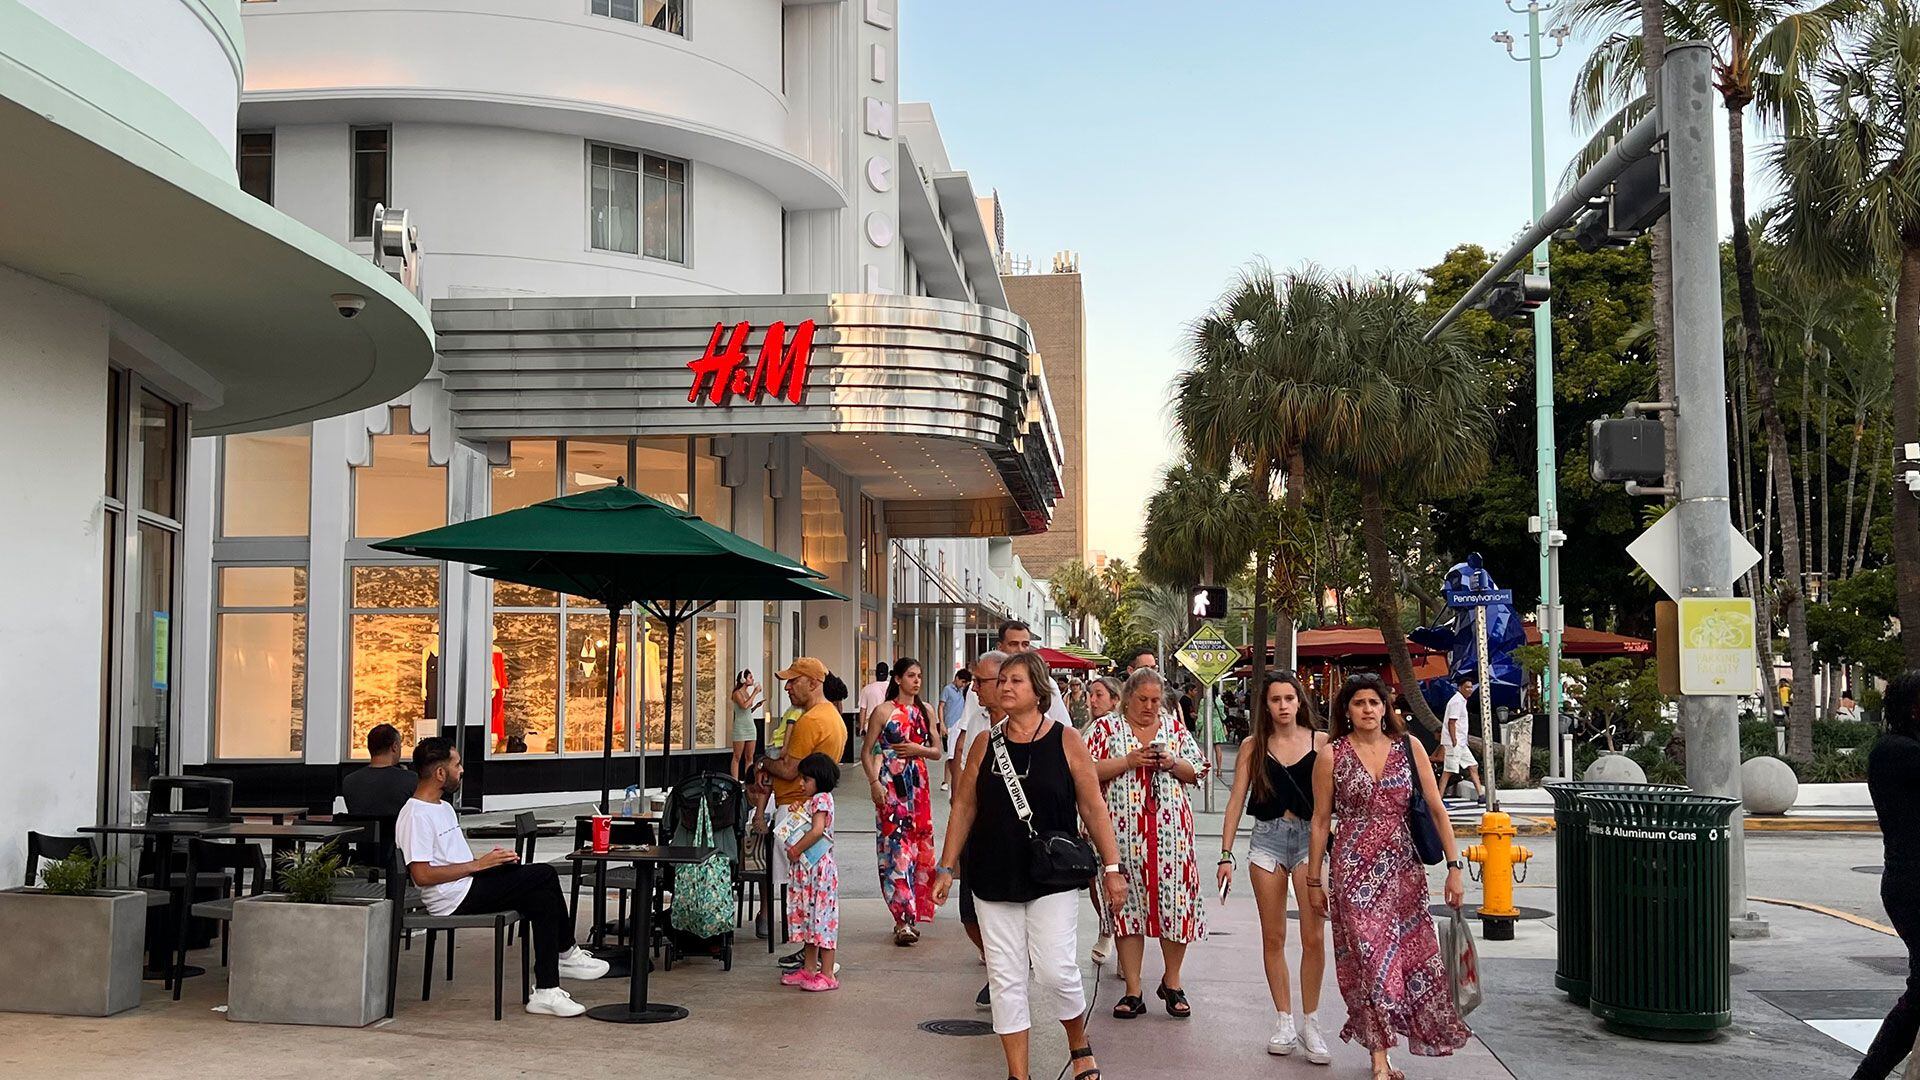 Lincoln Road Mall combina moda, arte y gastronomía en un ambiente exclusivo para peatones en Miami Beach. (Opy Morales)